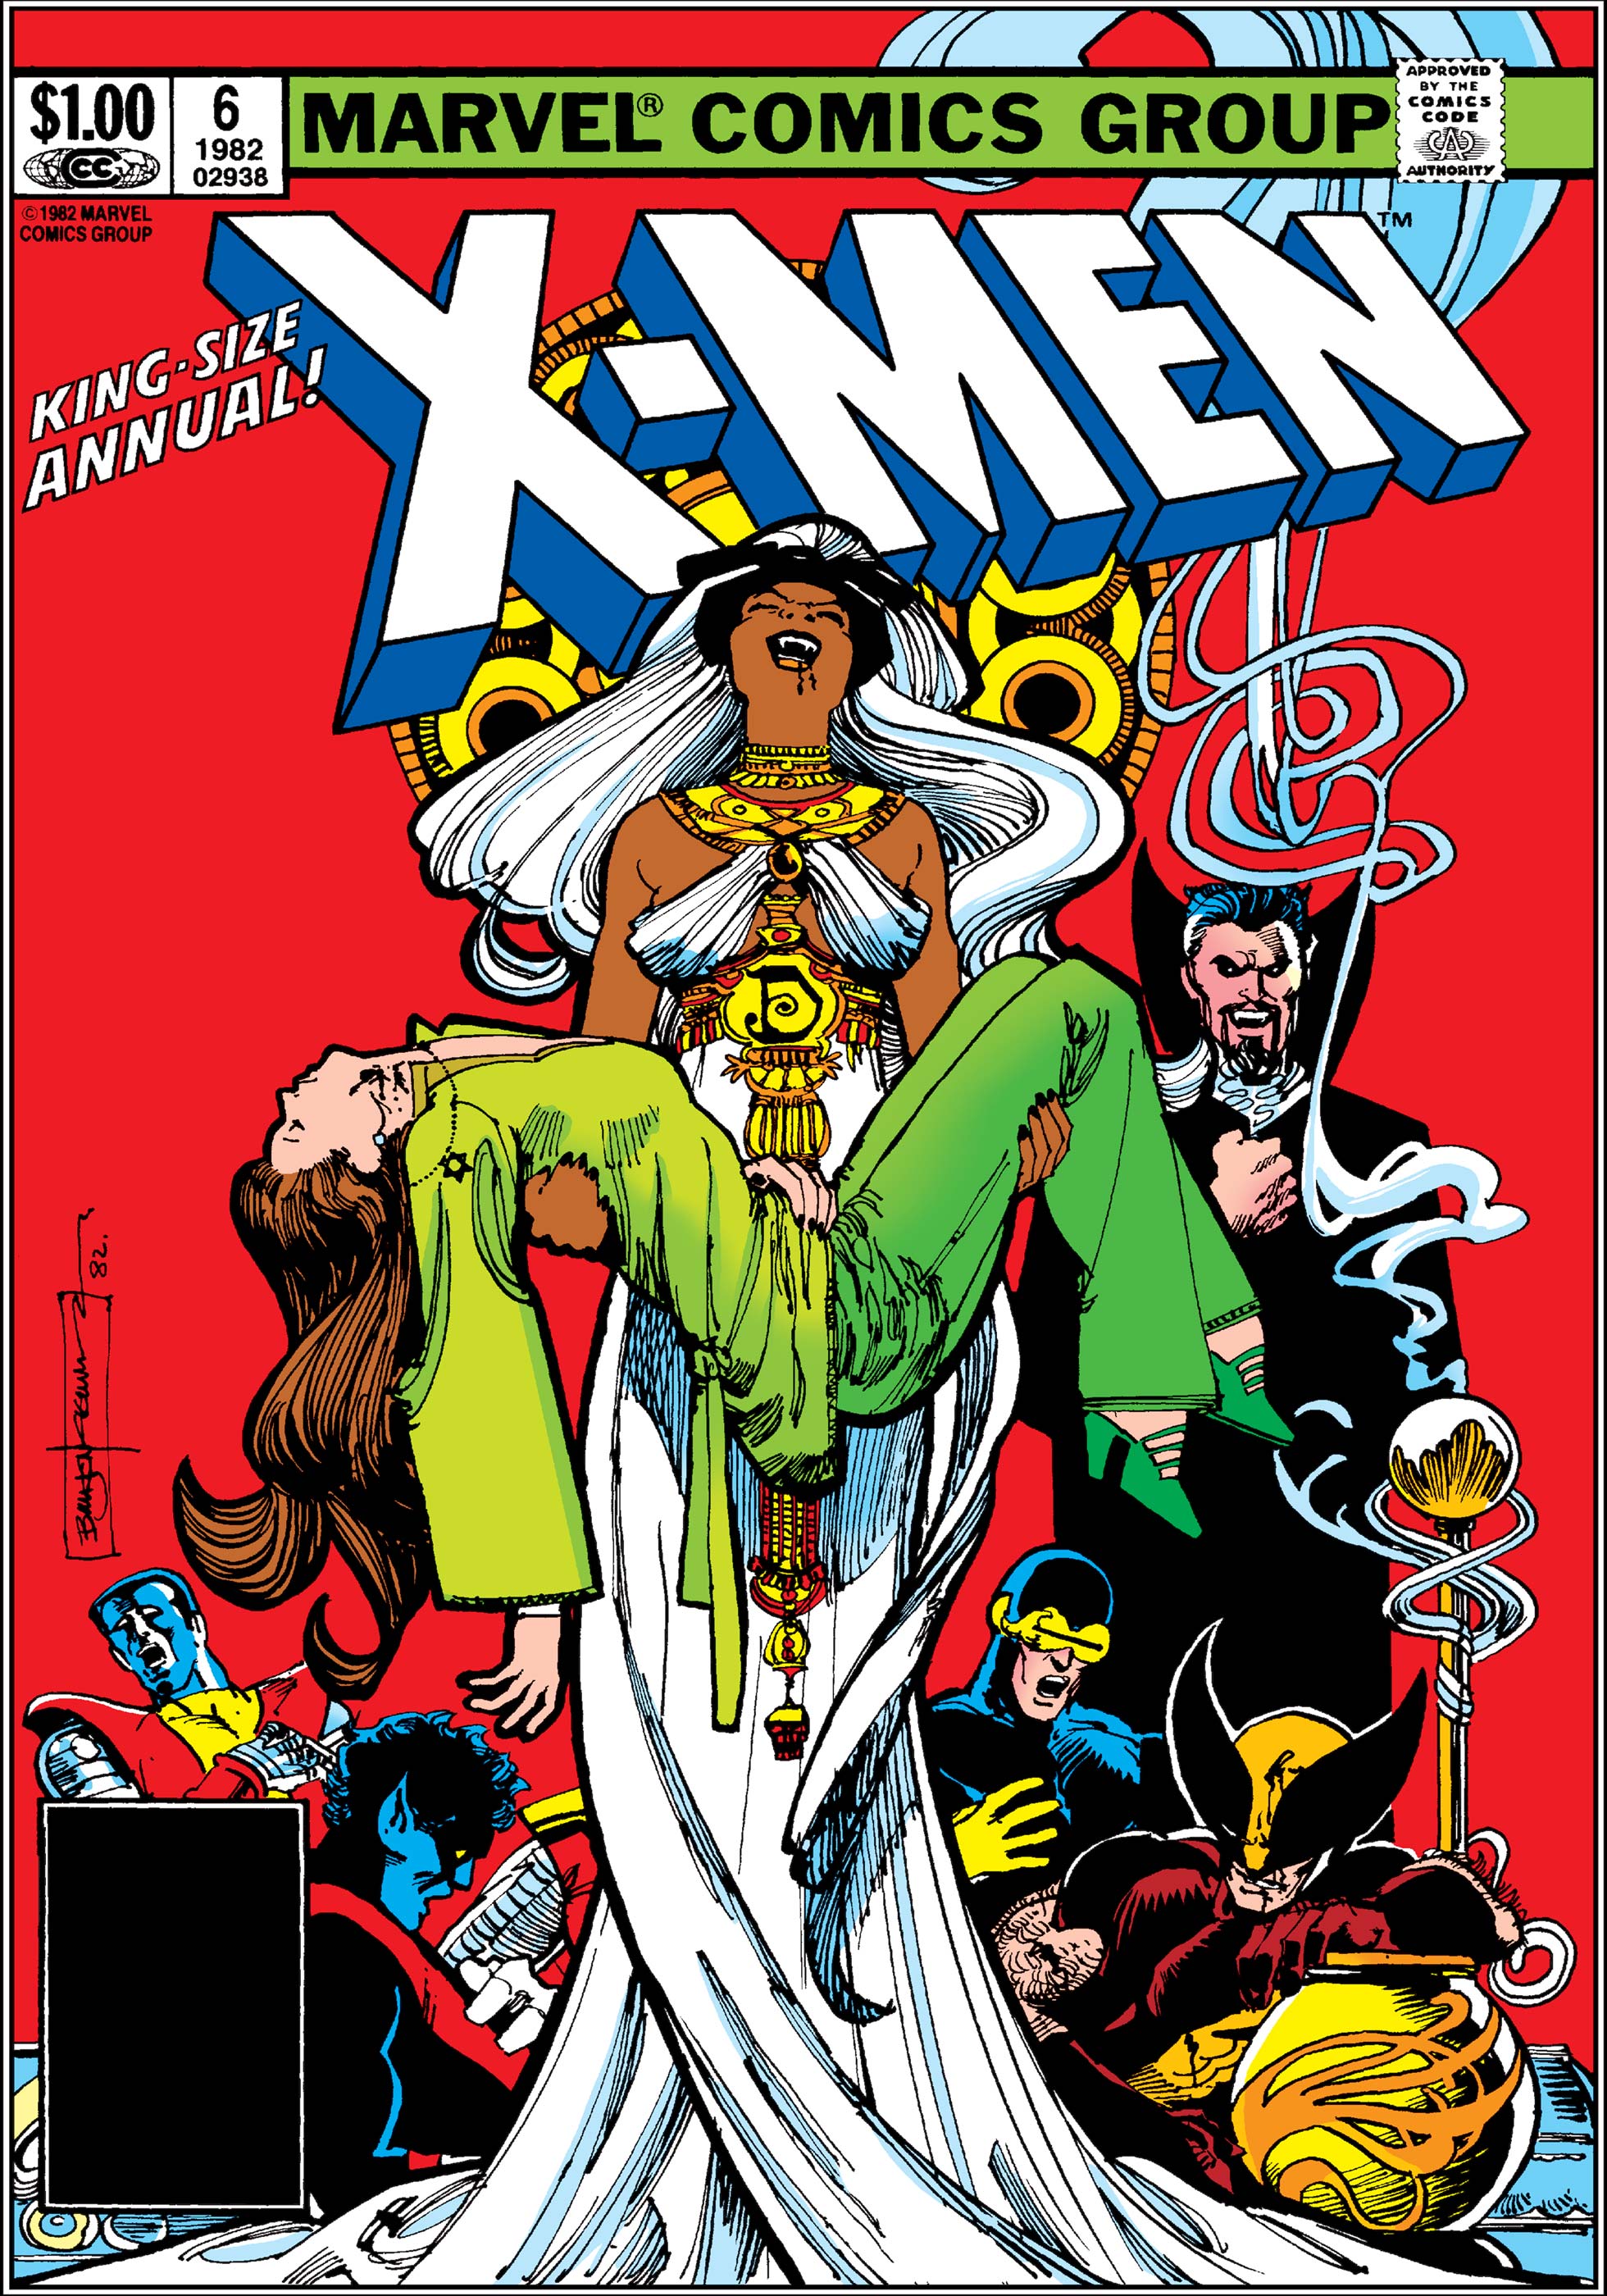 X-Men Annual (1970) #6